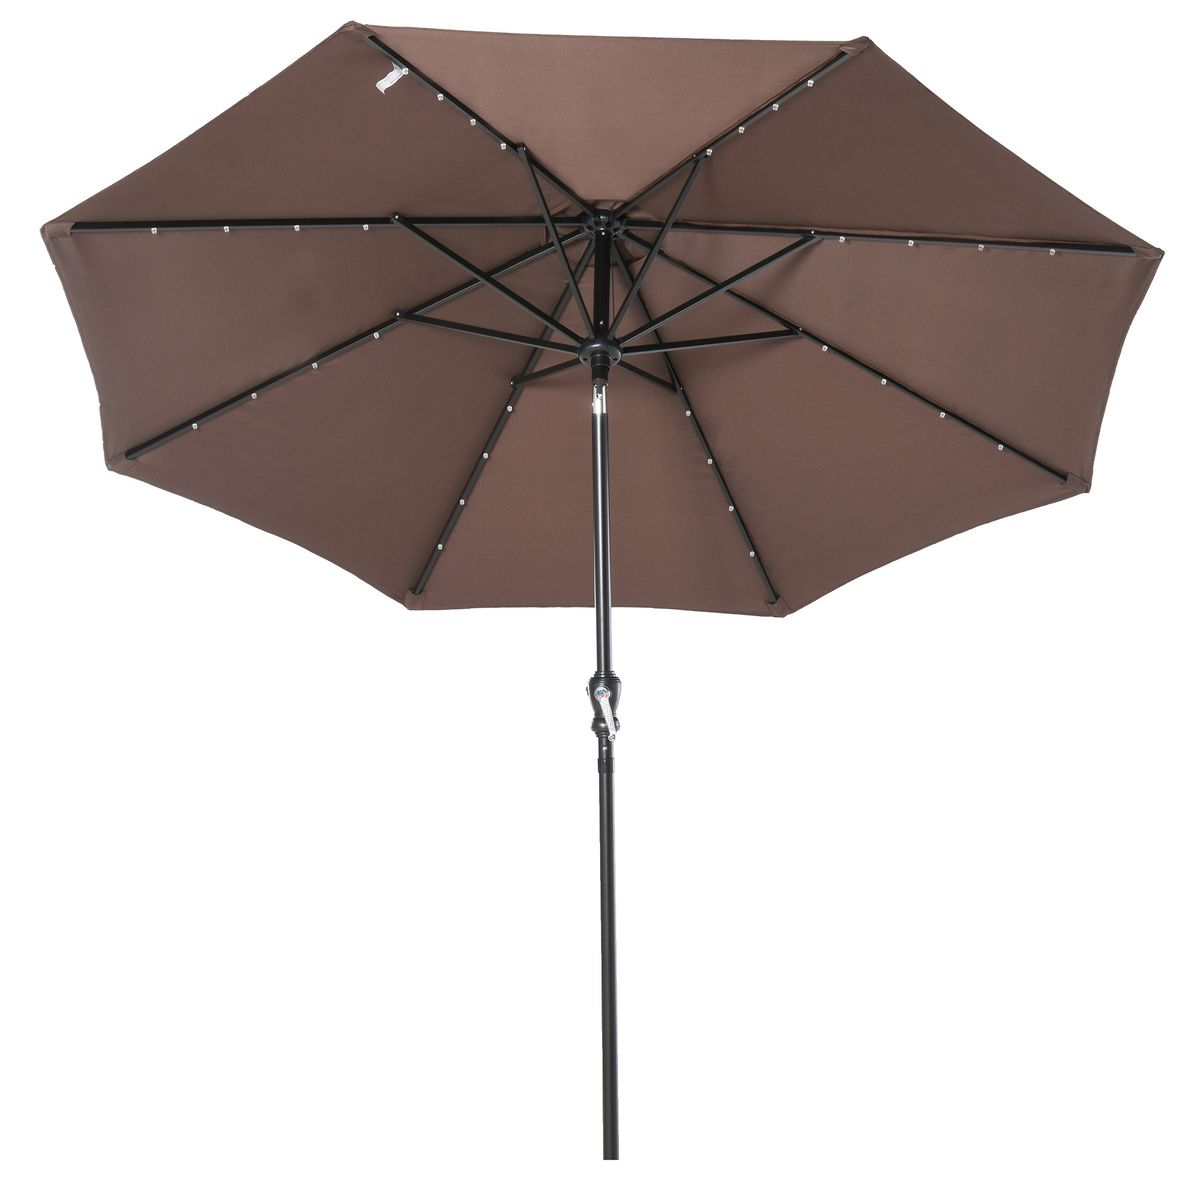 OUTSUNNY Parasol lumineux octogonal inclinable Ø 2,67 x 2,4H m parasol LED solaire métal polyester haute densité 180 g/m² chocolat